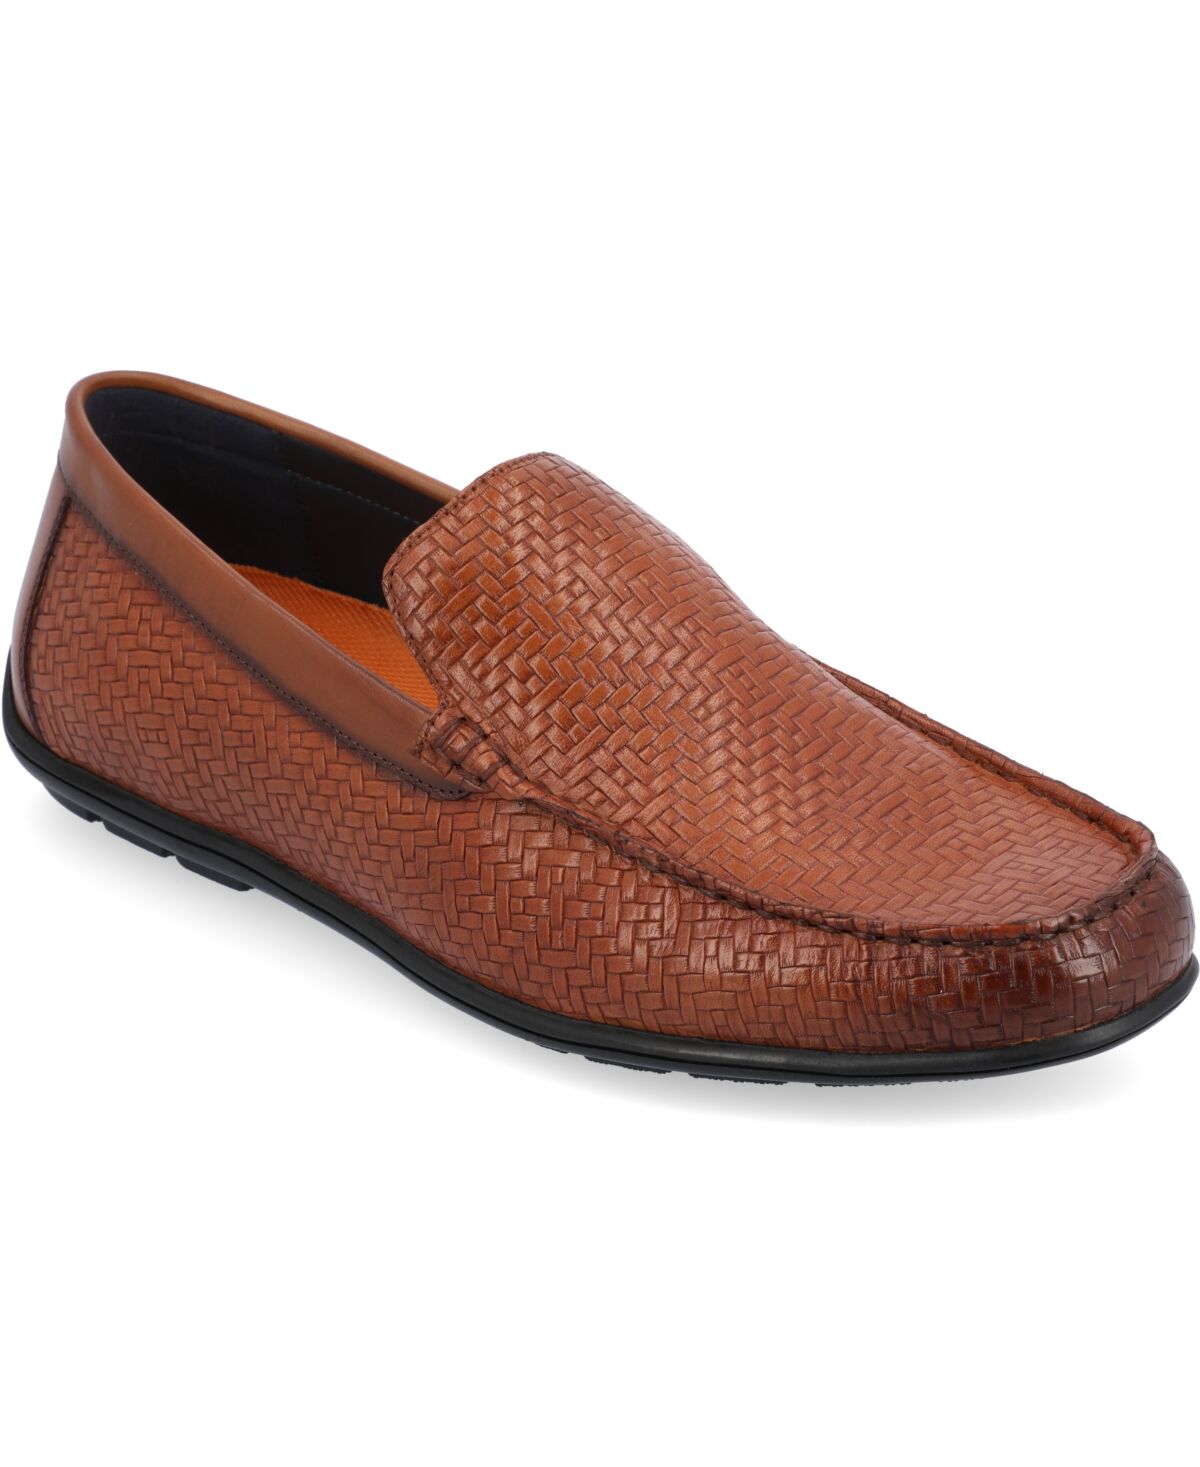 Thomas & Vine Men's Carter Moc Toe Driving Loafer Dress Shoes - Cognac